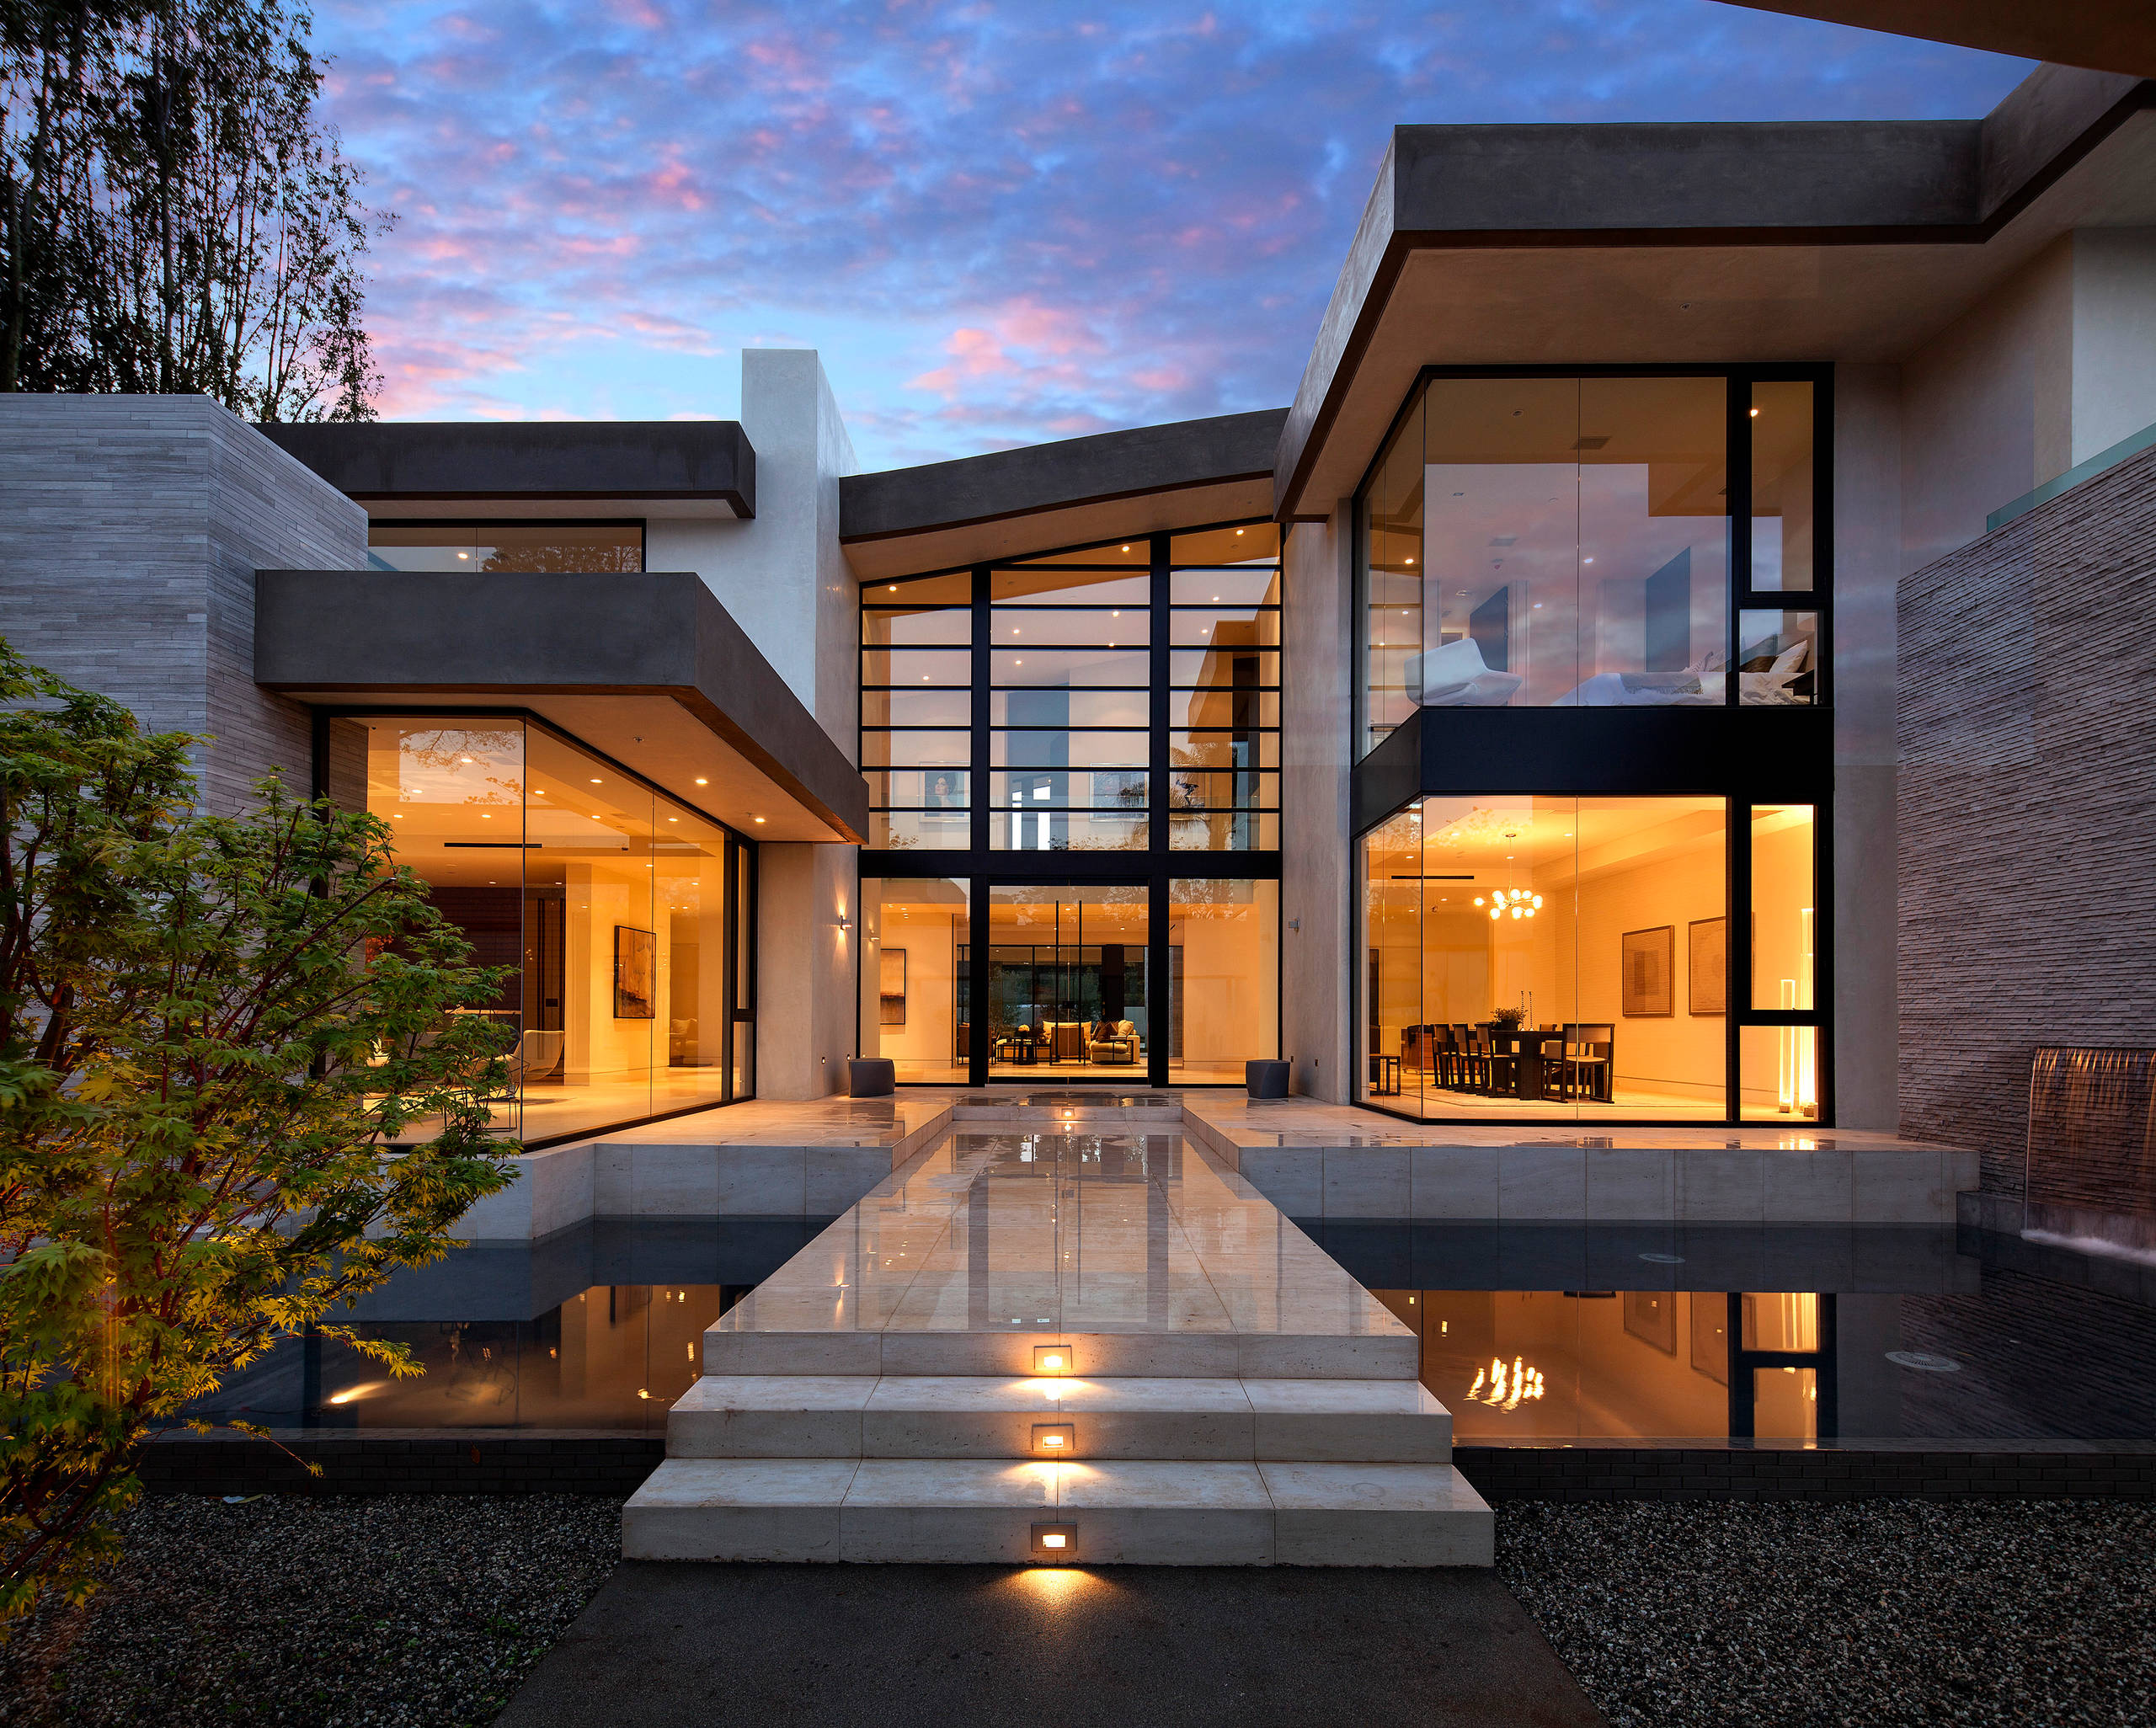 75 Contemporary Glass Exterior Home Ideas You'll Love - February, 2022 |  Houzz